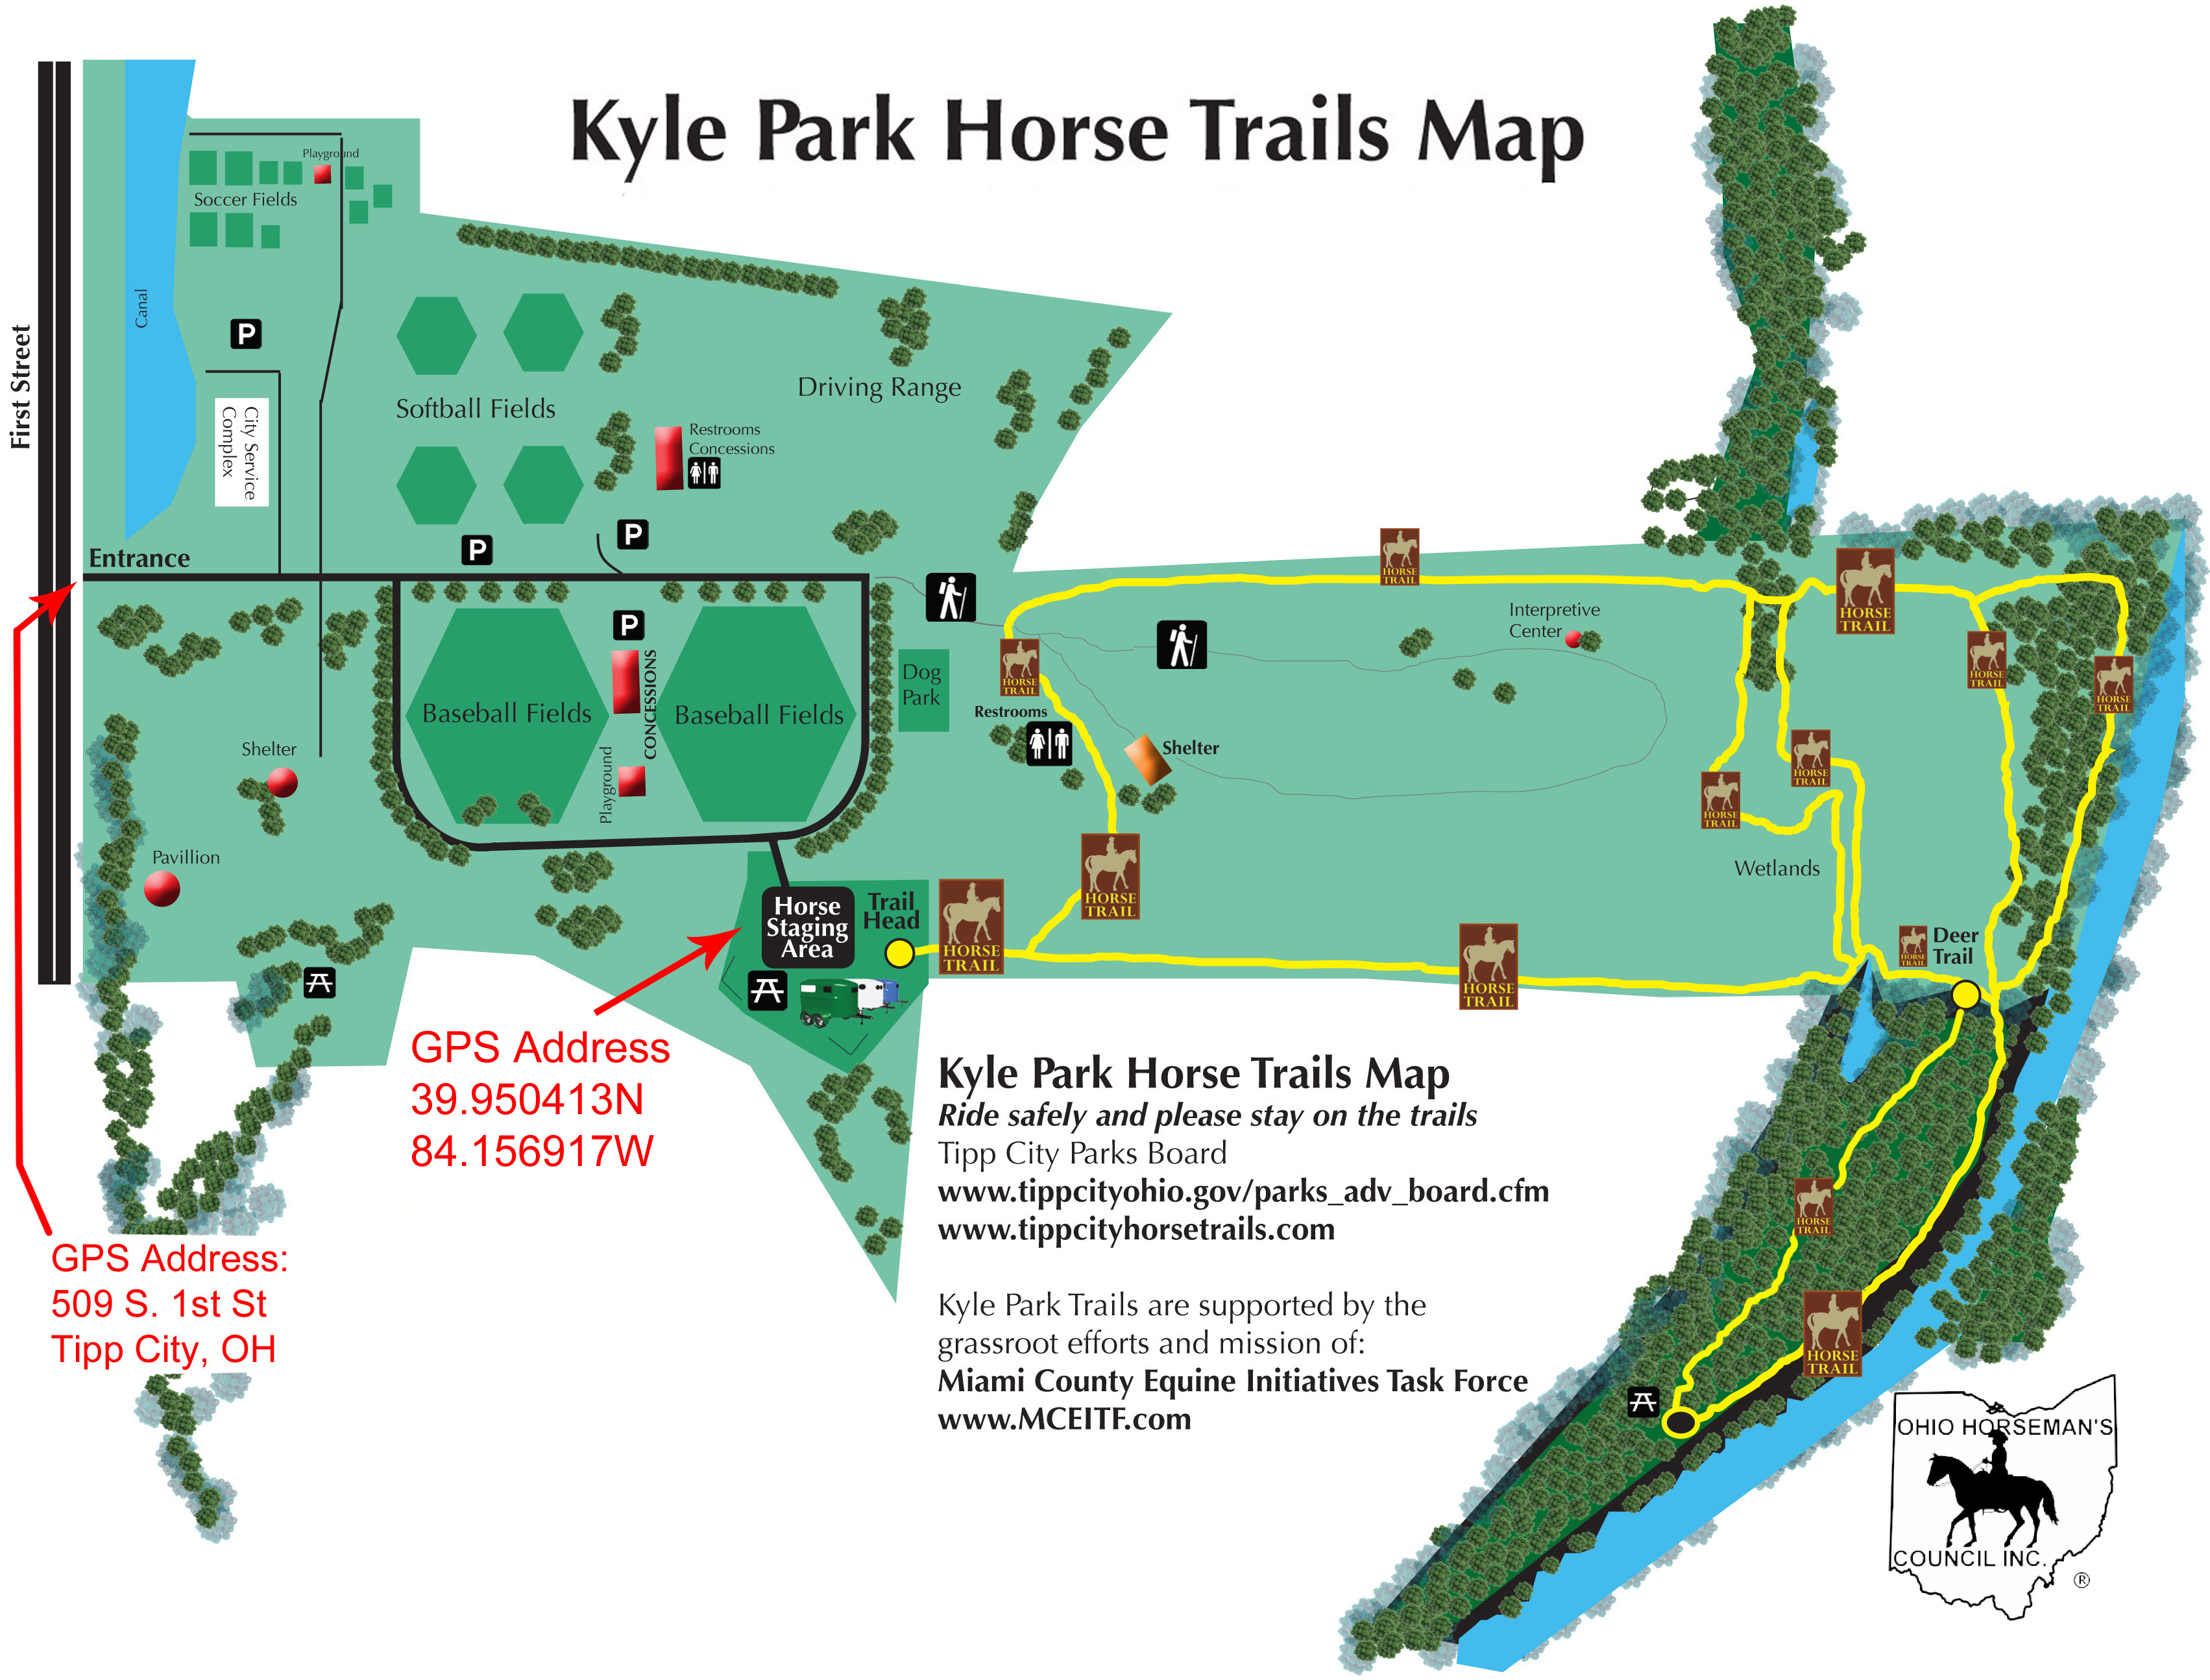 Kyle Park Horse Trail